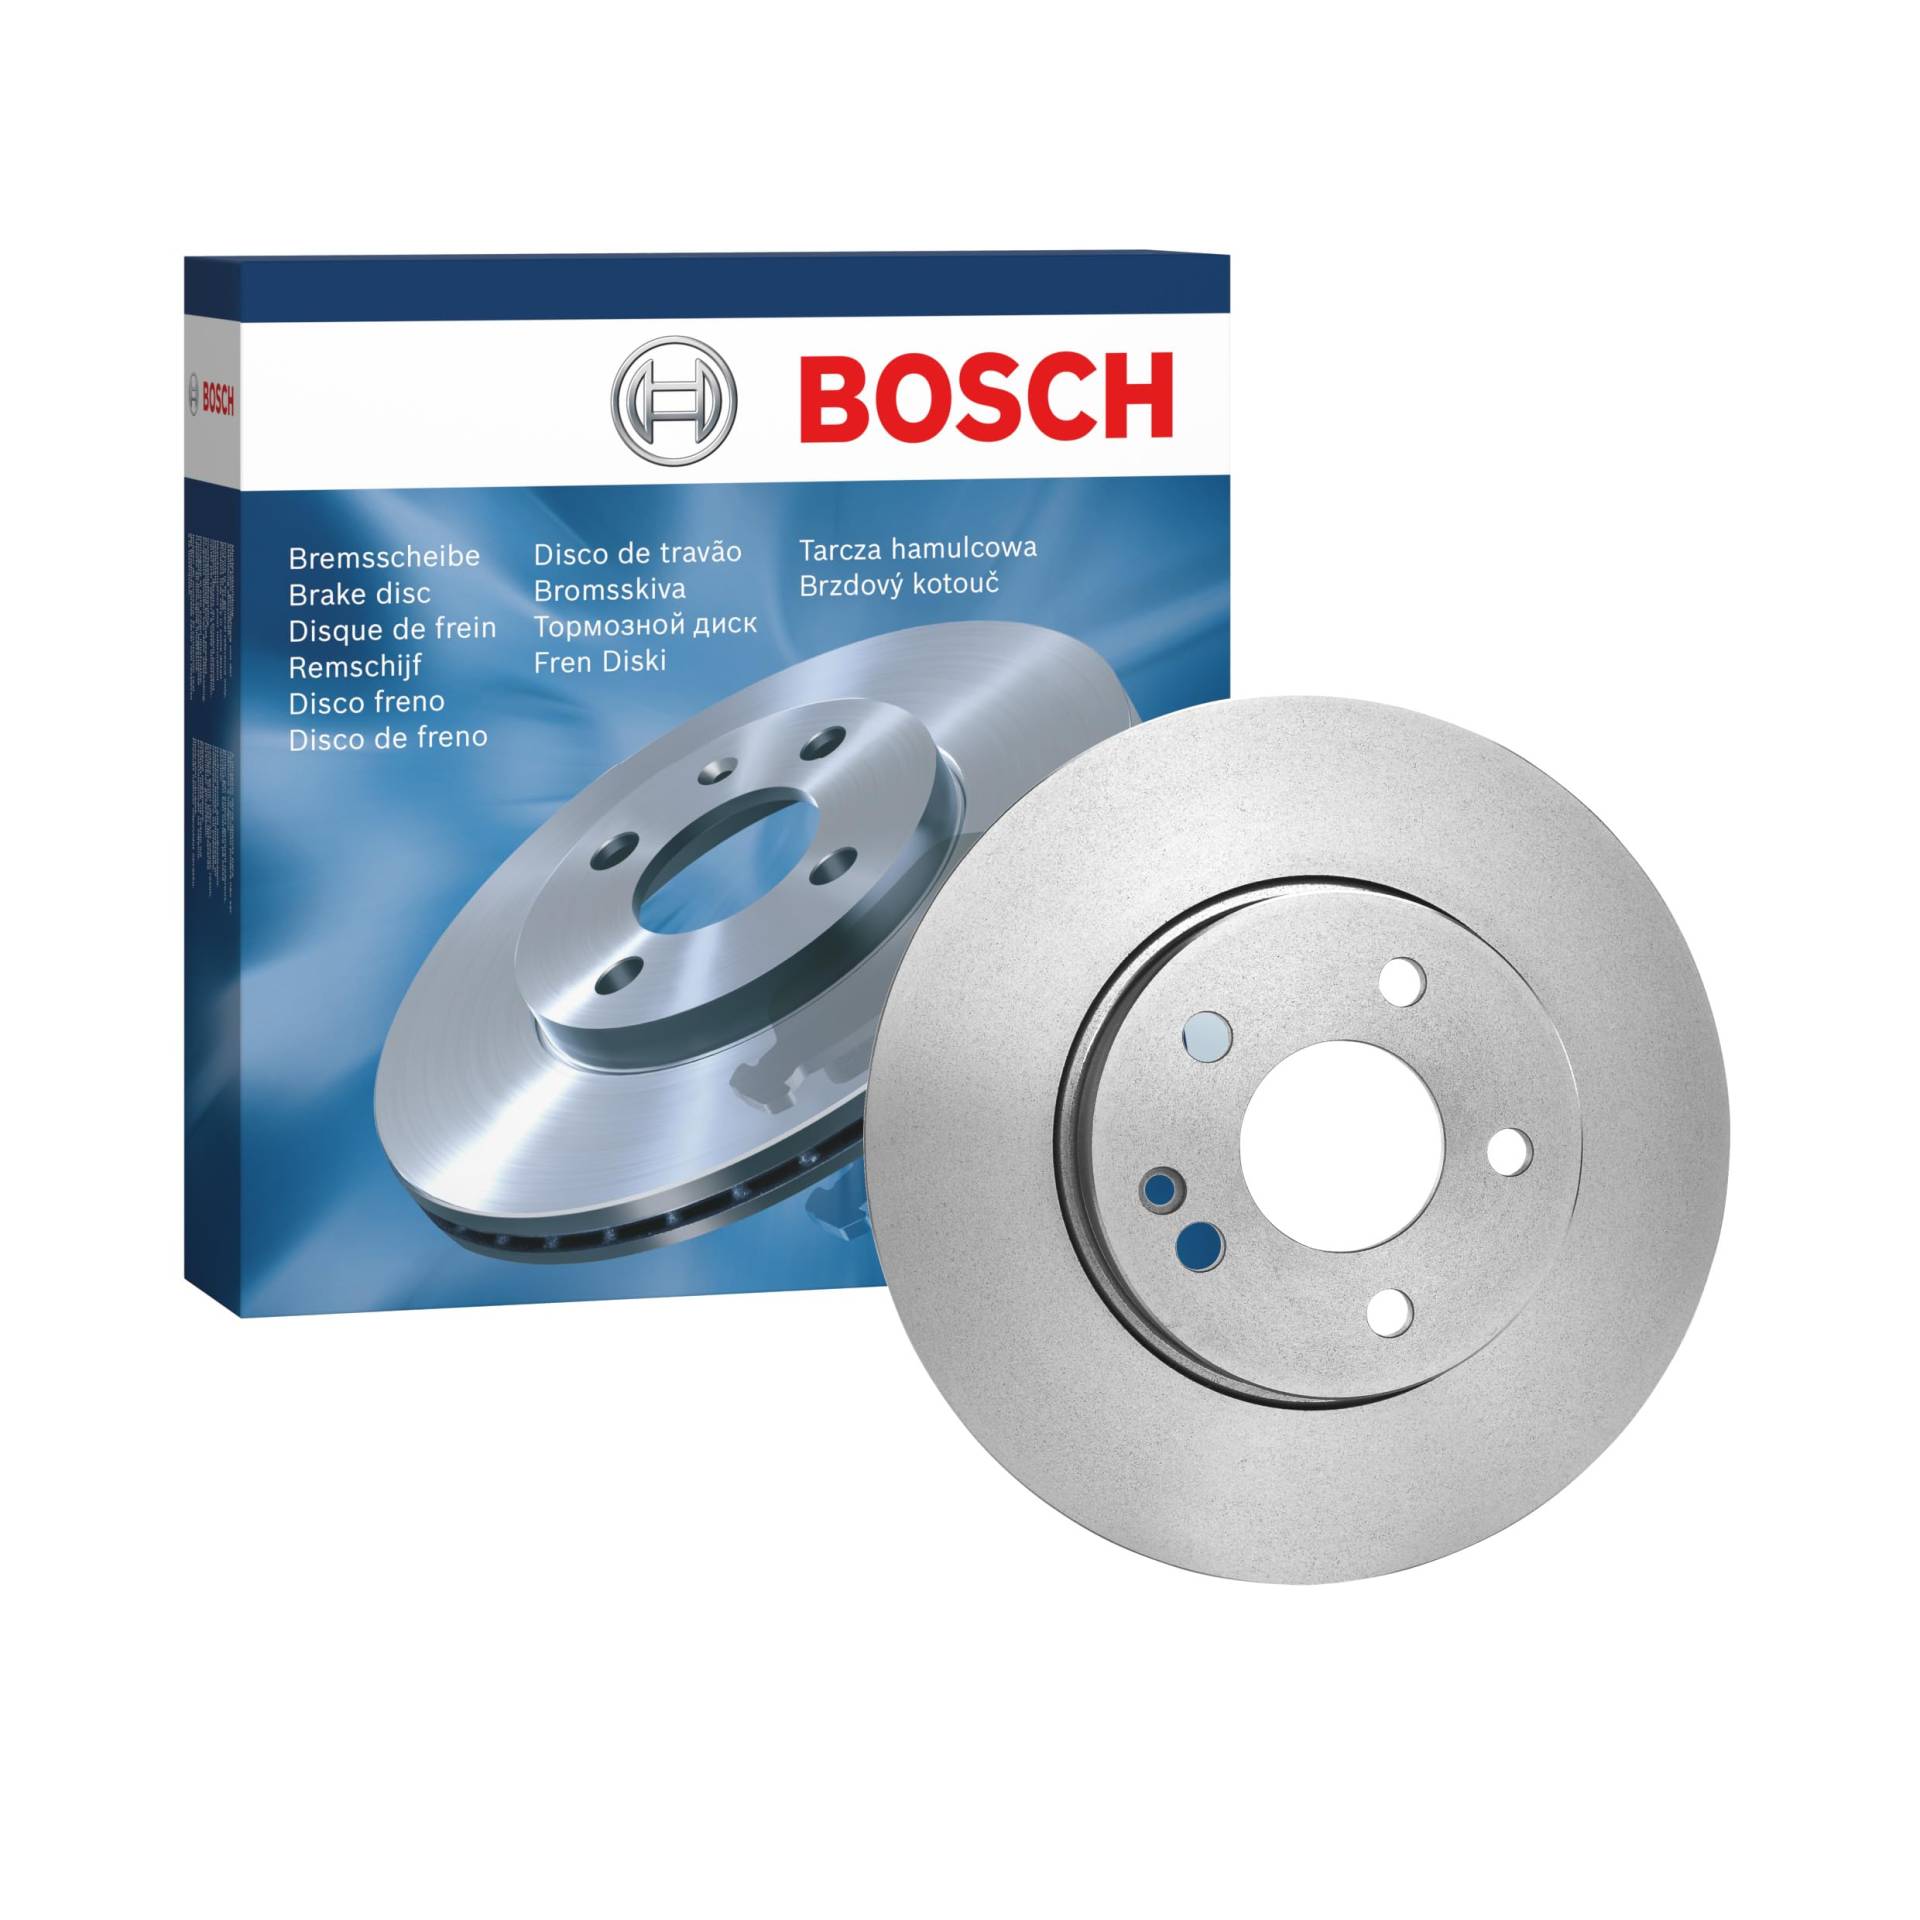 Bosch BD975 Bremsscheiben - Vorderachse - ECE-R90 Zertifizierung - eine Bremsscheibe von Bosch Automotive